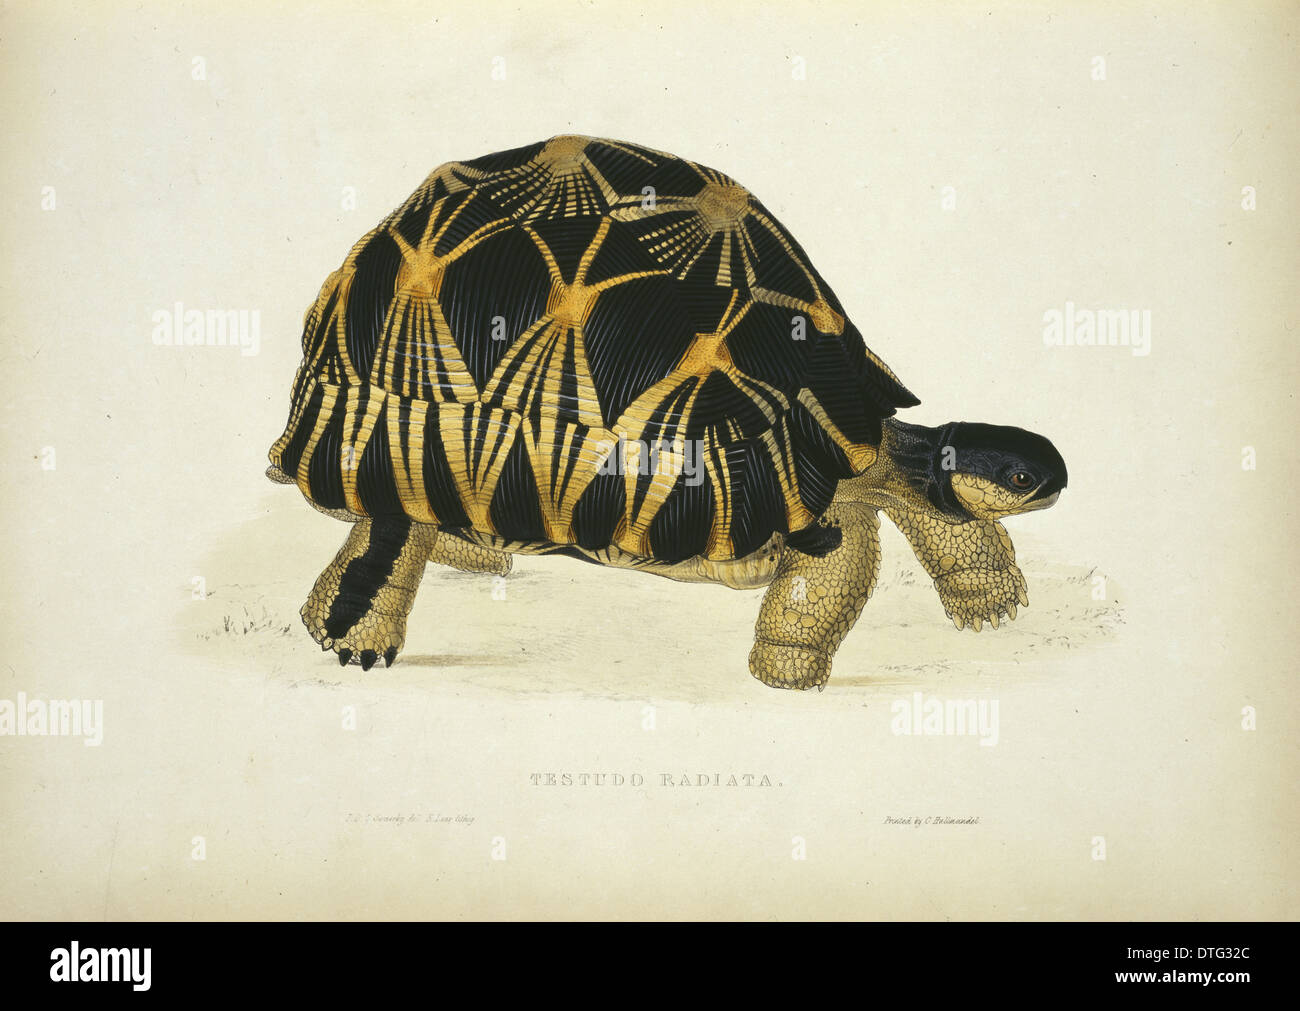 Geochelone radiata, radiated tortoise Stock Photo